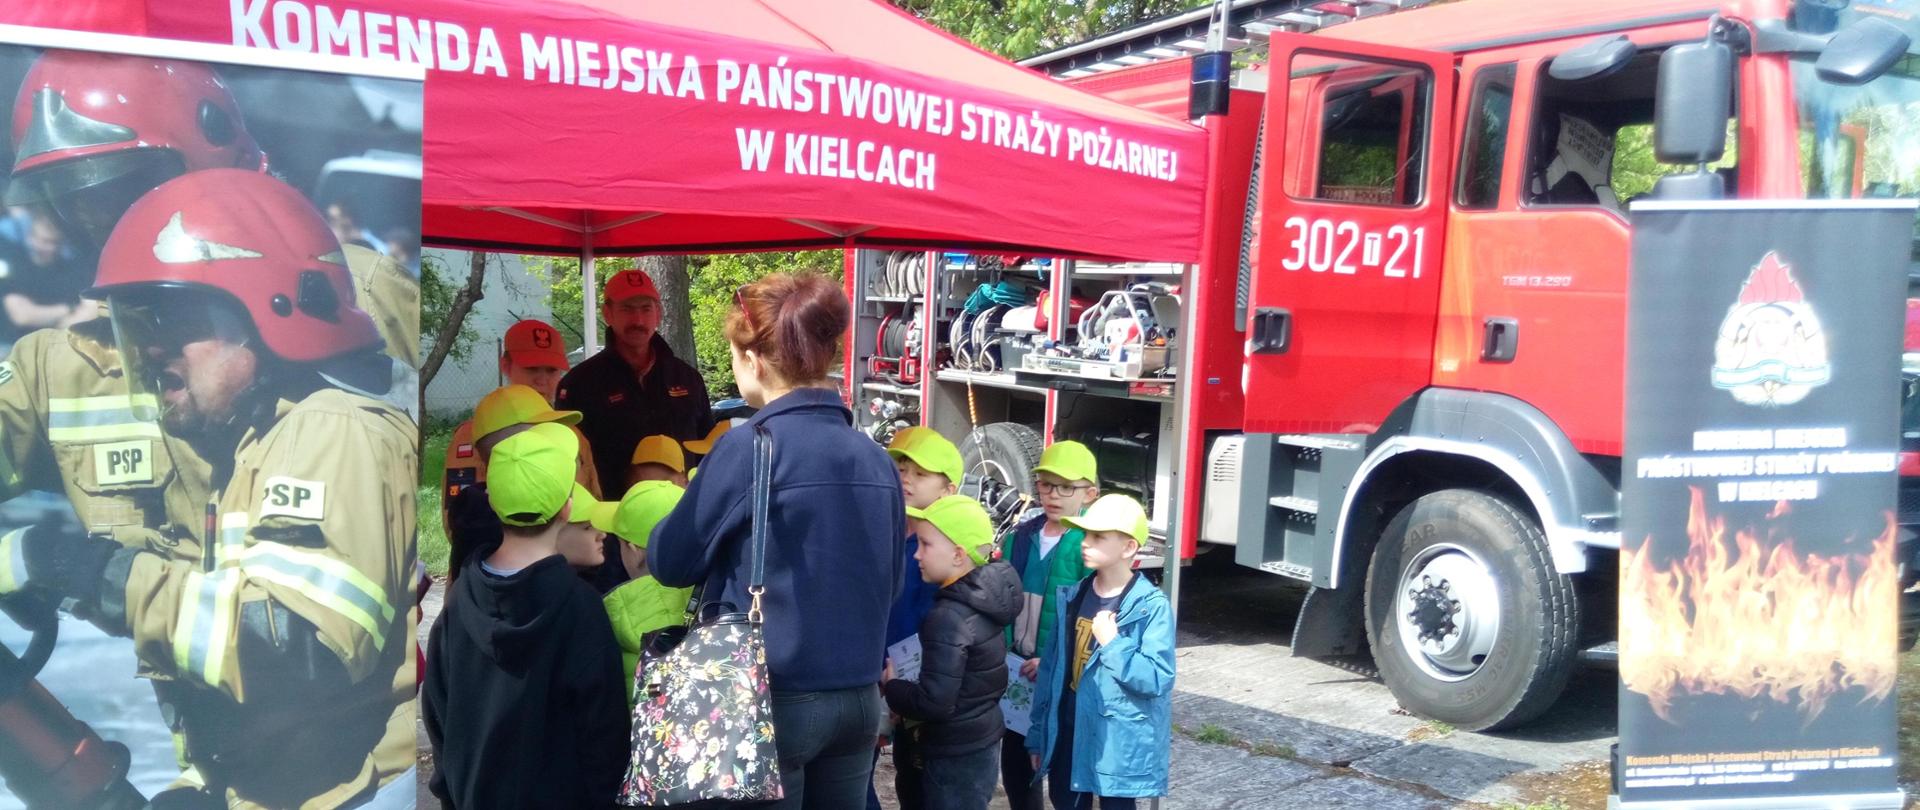 Zdjęcie przedstawia stoisko Państwowej Straży Pożarnej, przy którym skupiła się grupa dzieci wraz z opiekunami. Strażacy edukują najmłodszych a po prawej stronie stoi wóz strażacki.